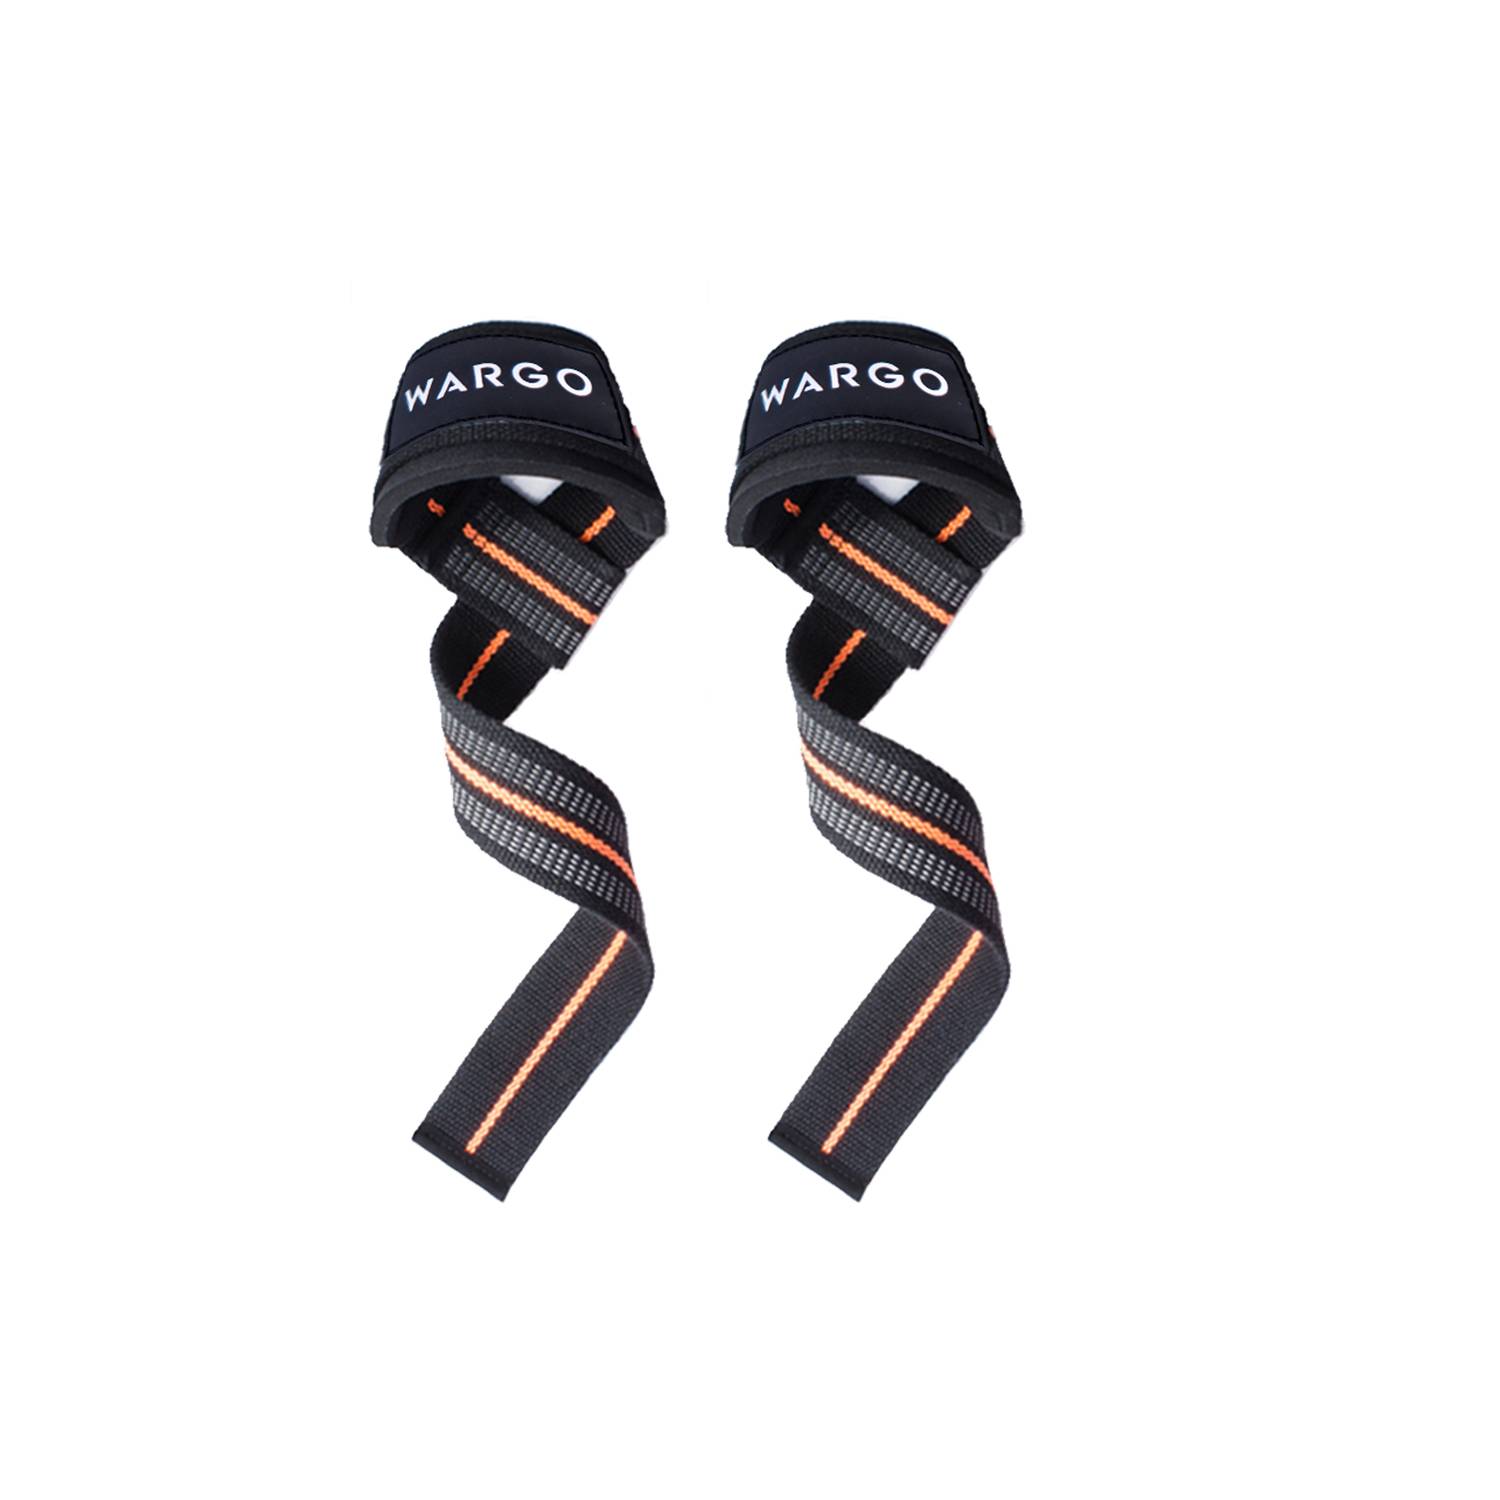 Calleras Grip Premium + K6 Crossfit Straps Pesas